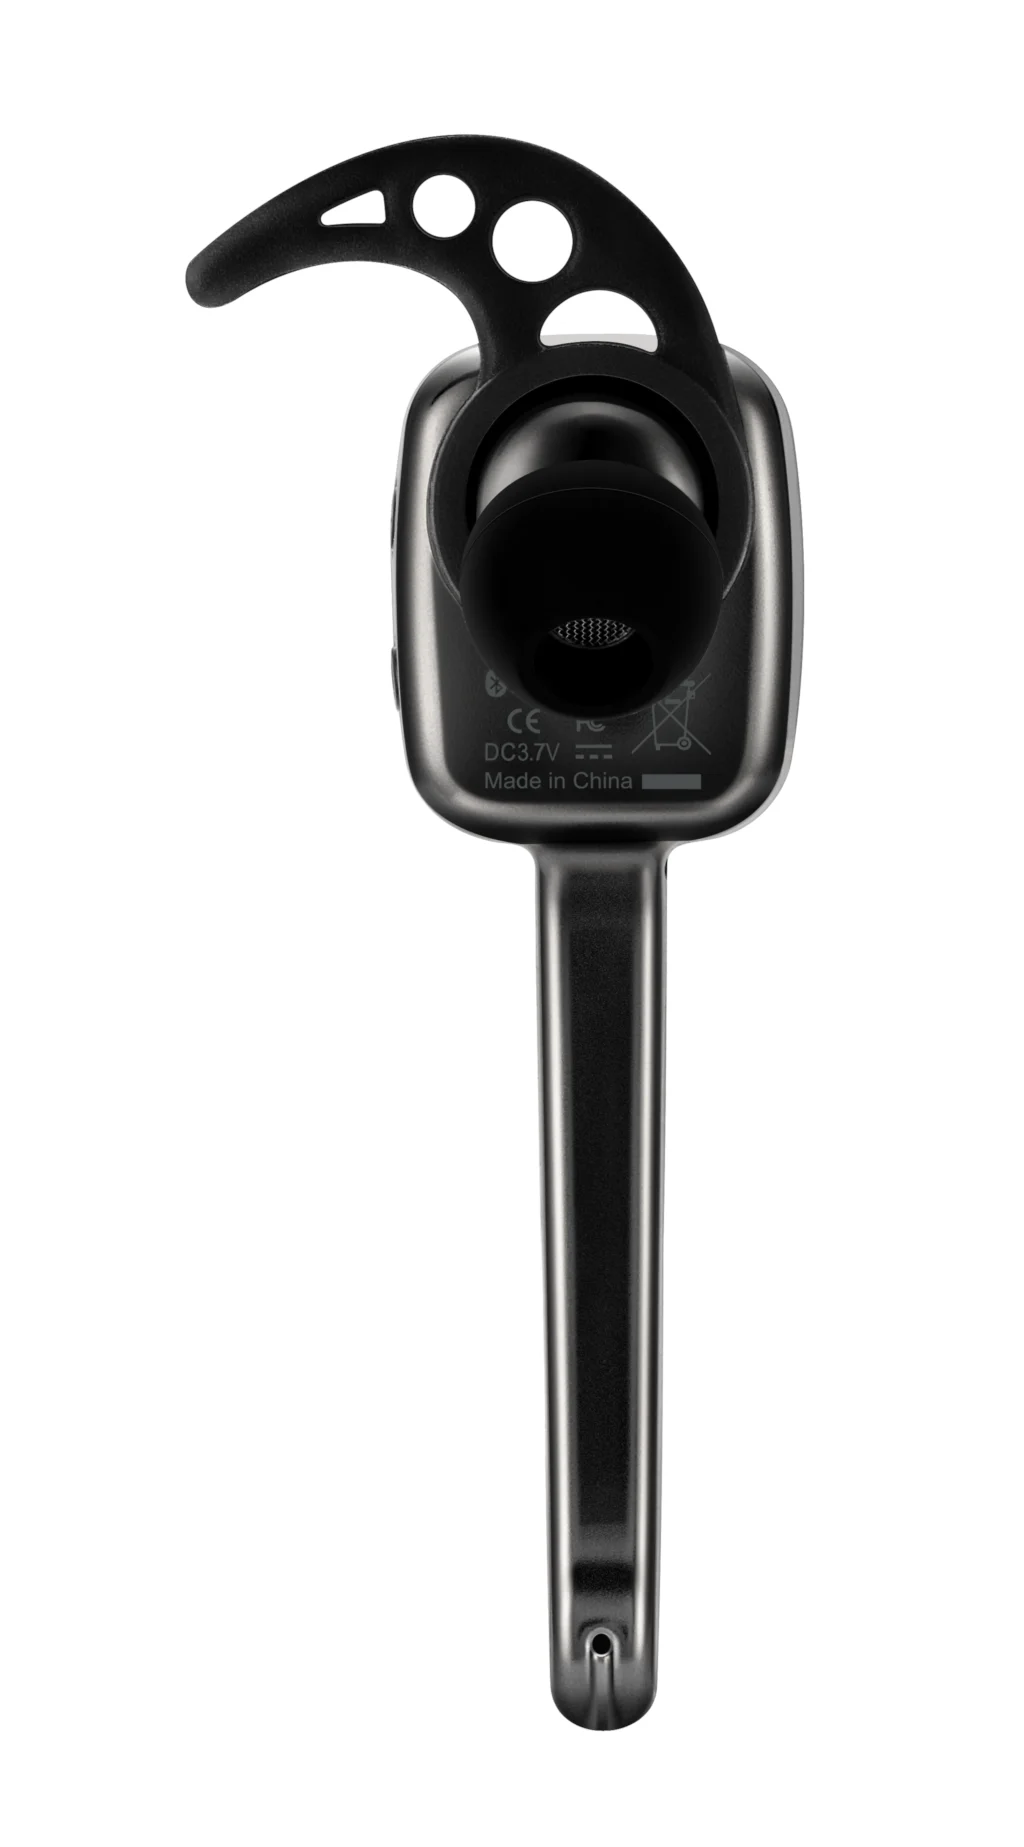 Roman R9030 Bluetooth наушники бизнес Громкая связь Auriculares fone de ouvido беспроводная гарнитура для всех телефонов с упаковкой